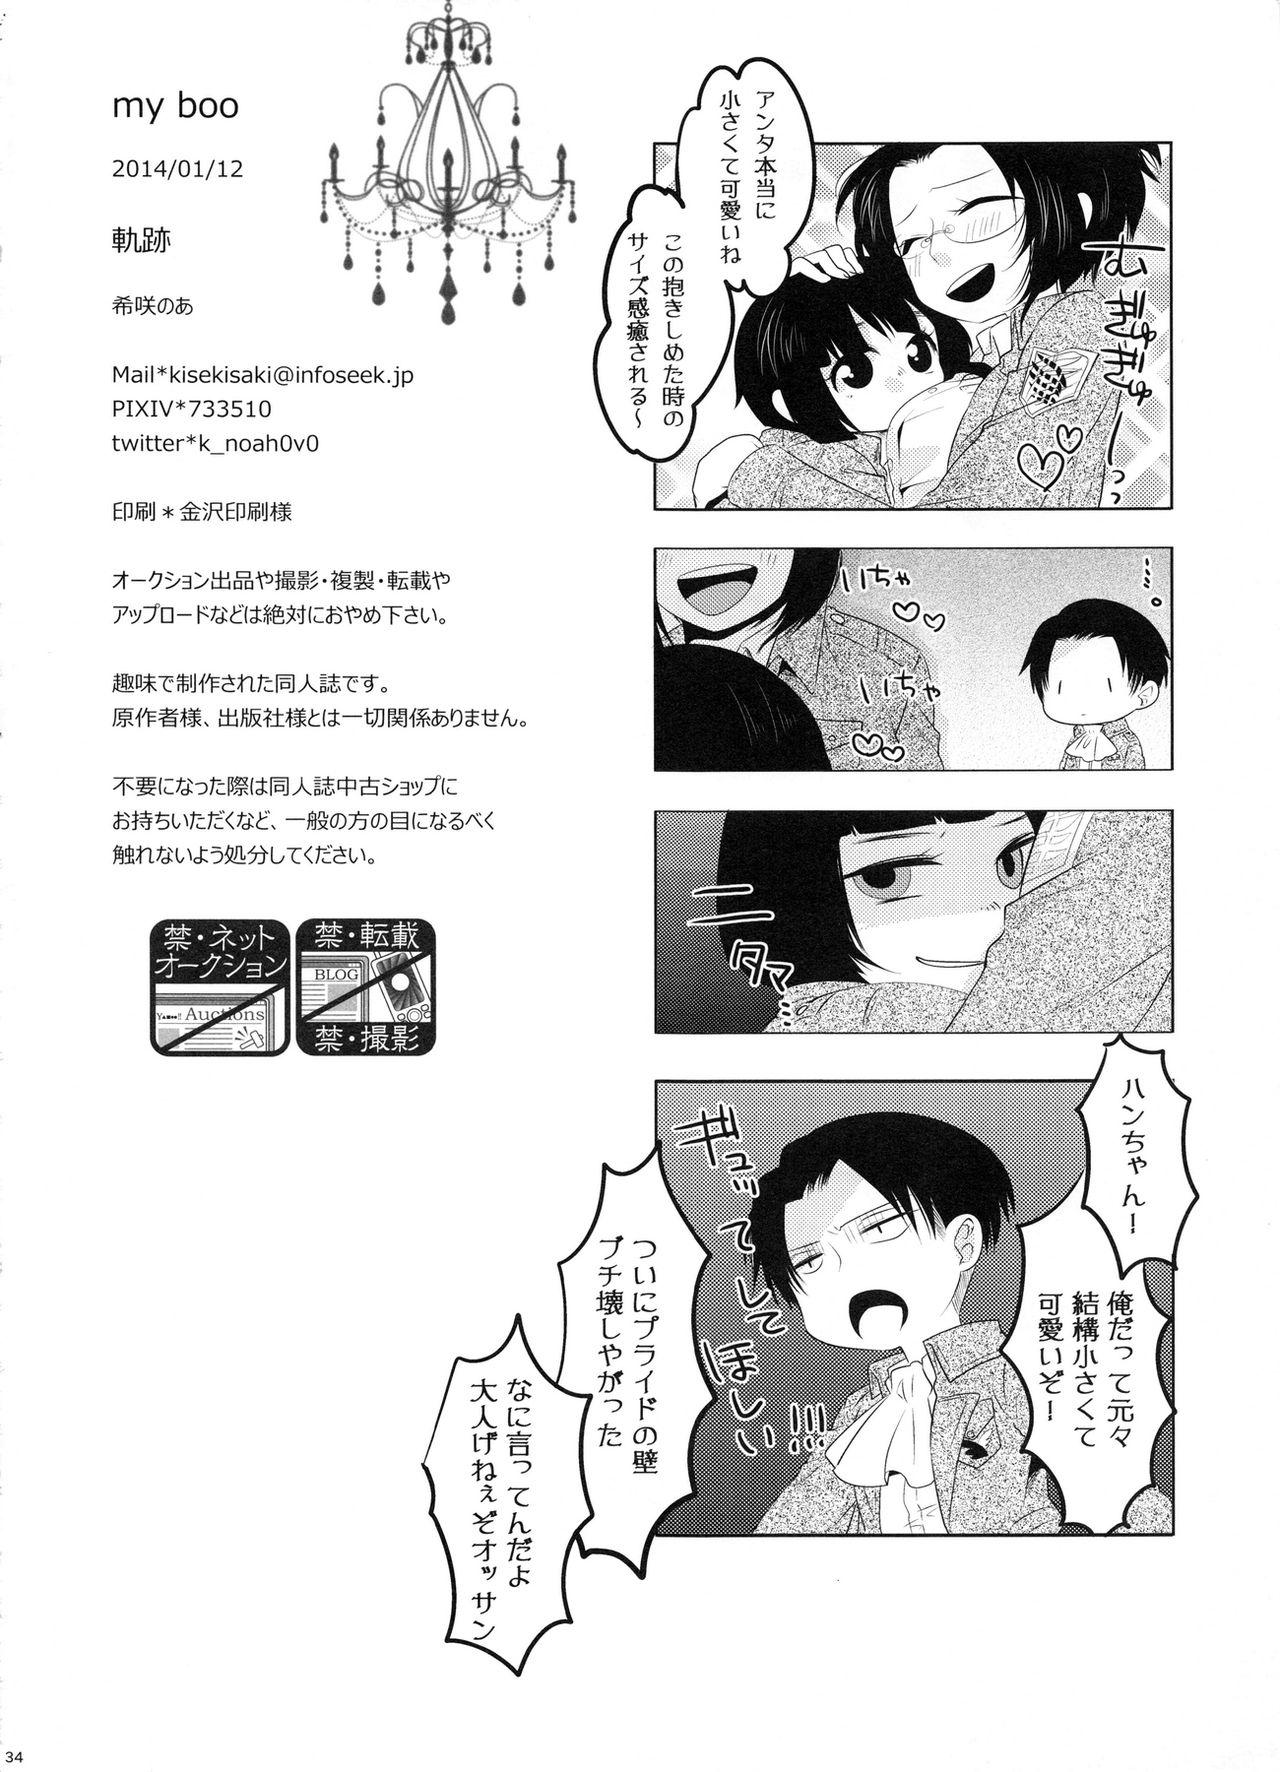 Suck My boo - Shingeki no kyojin Three Some - Page 34